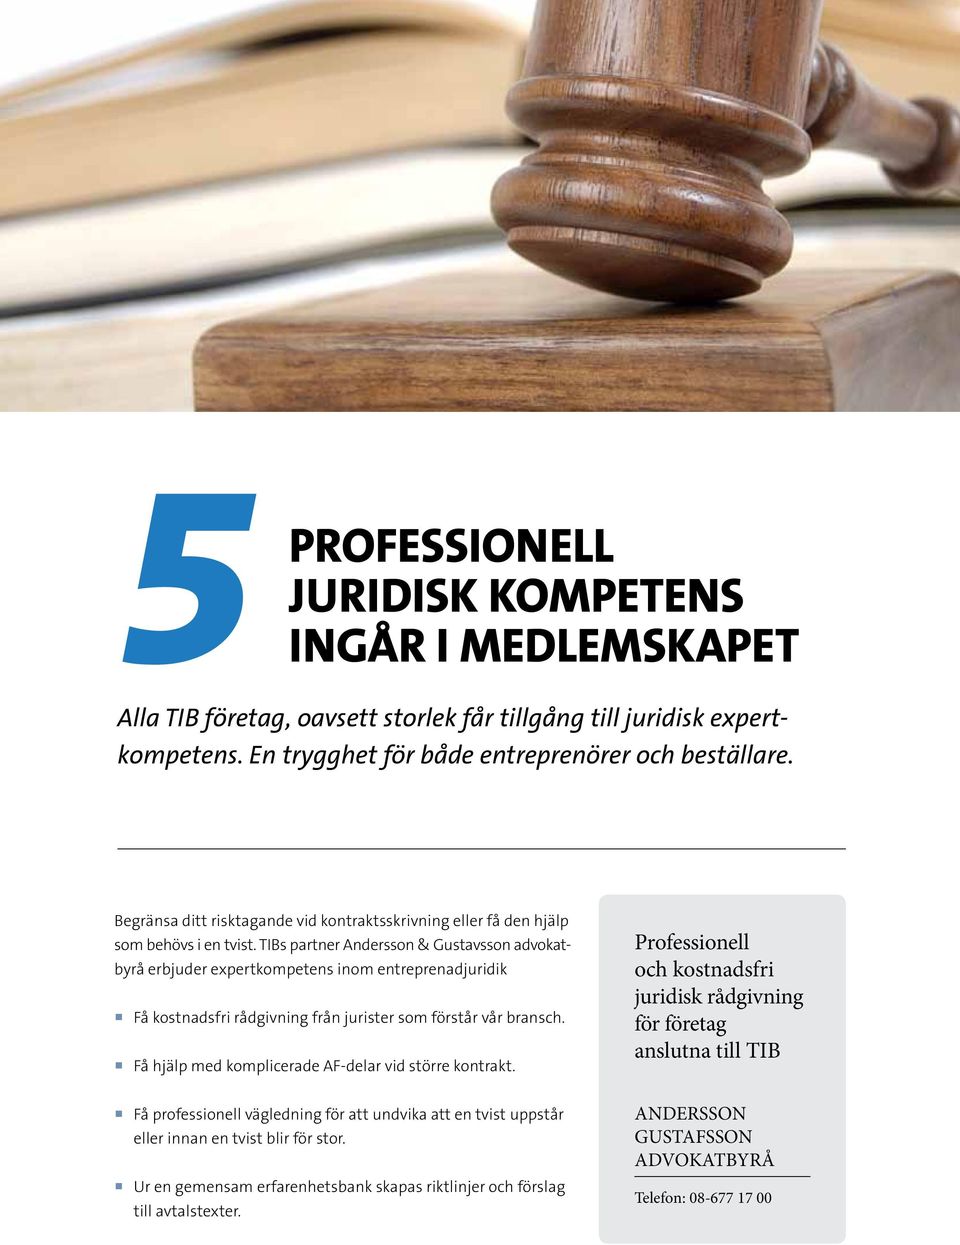 TIBs partner Andersson & Gustavsson advokatbyrå erbjuder expertkompetens inom entreprenadjuridik Få kostnadsfri rådgivning från jurister som förstår vår bransch.